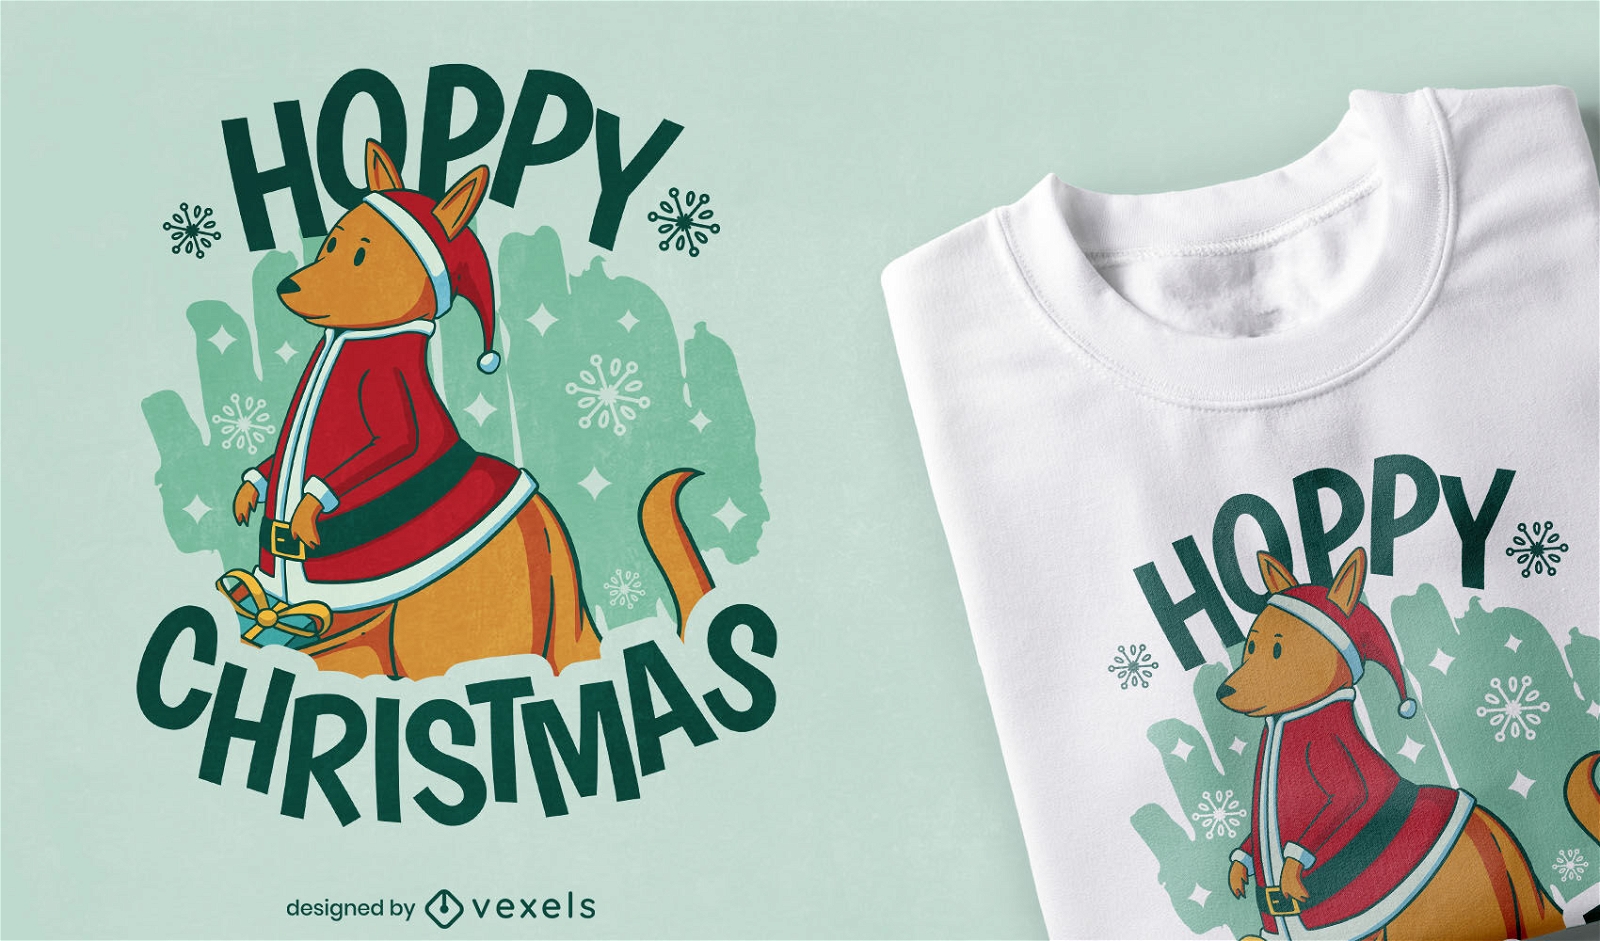 Christmas kangaroo holiday t-shirt design